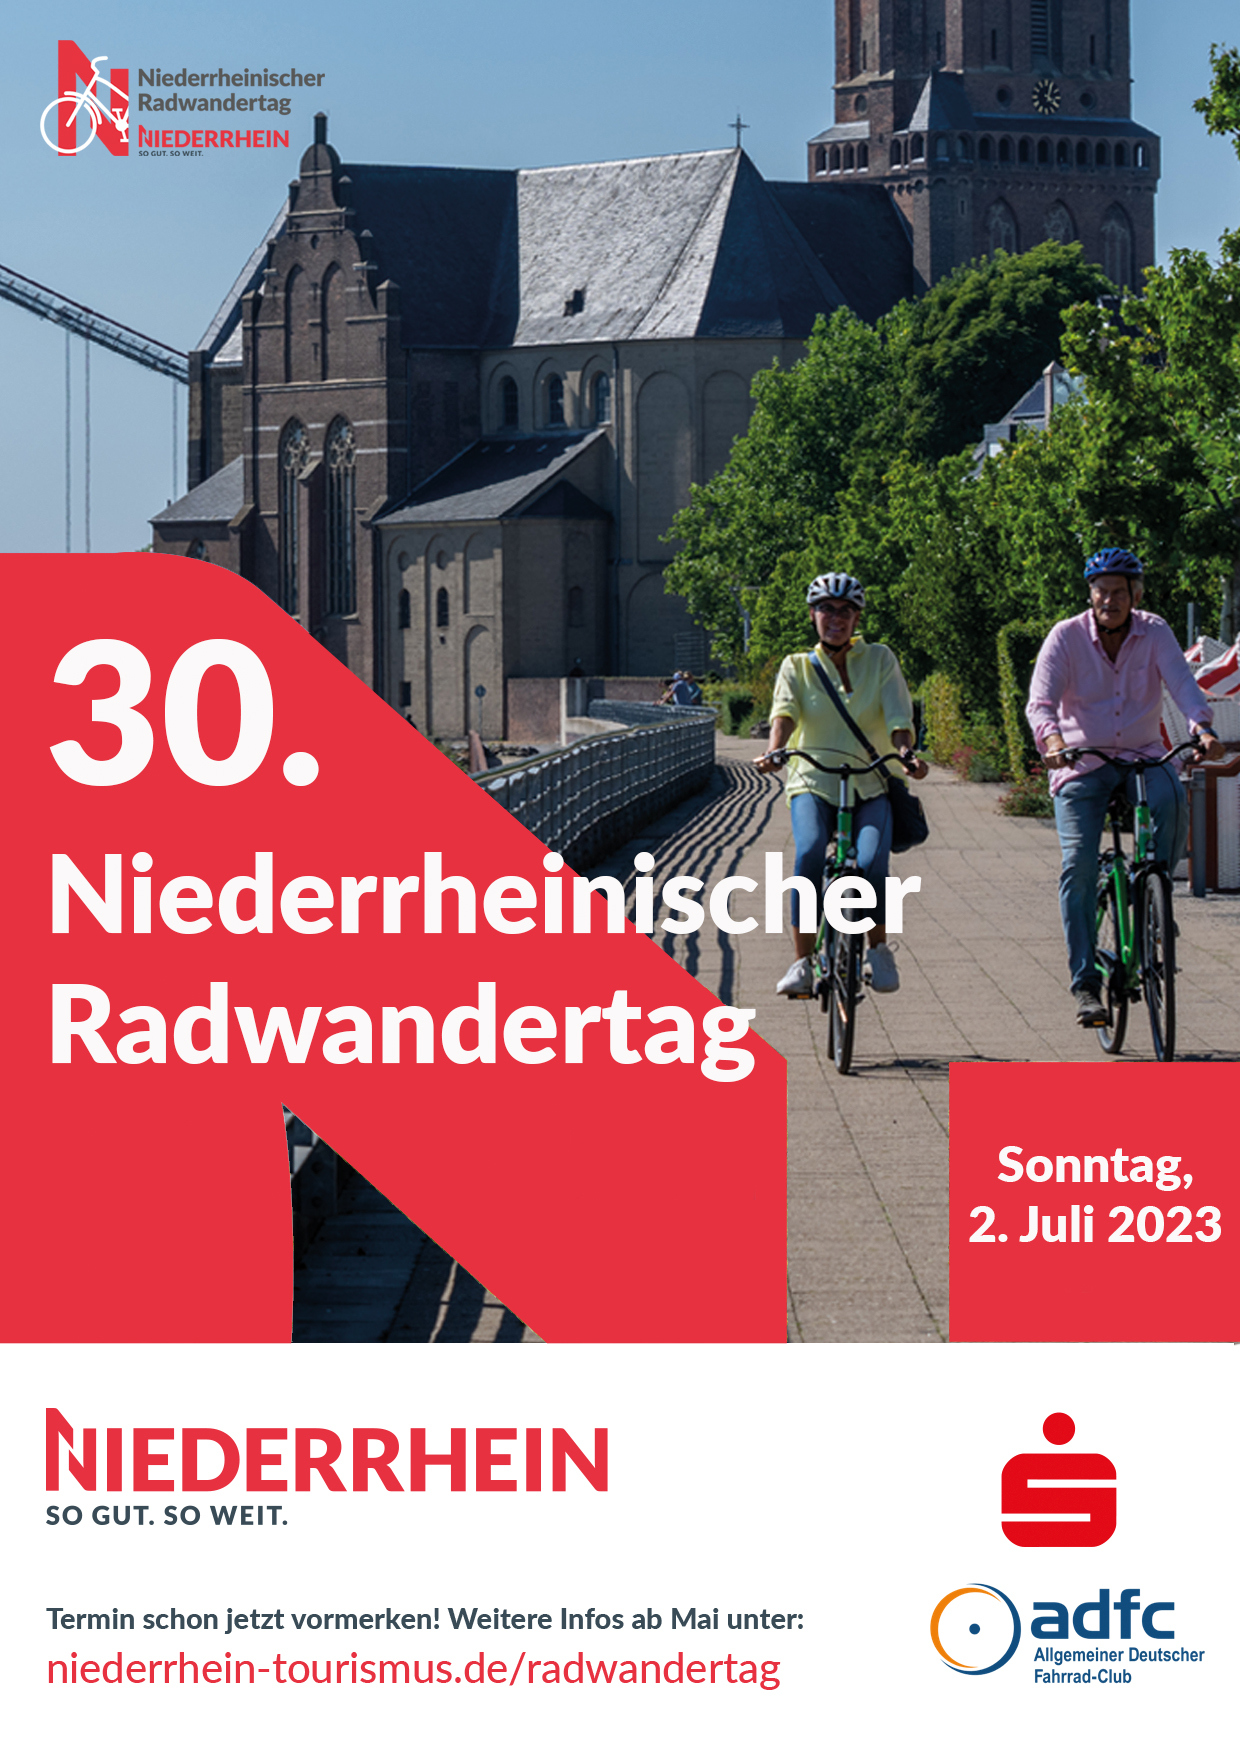 30 Niederrheinischer Radwandertag